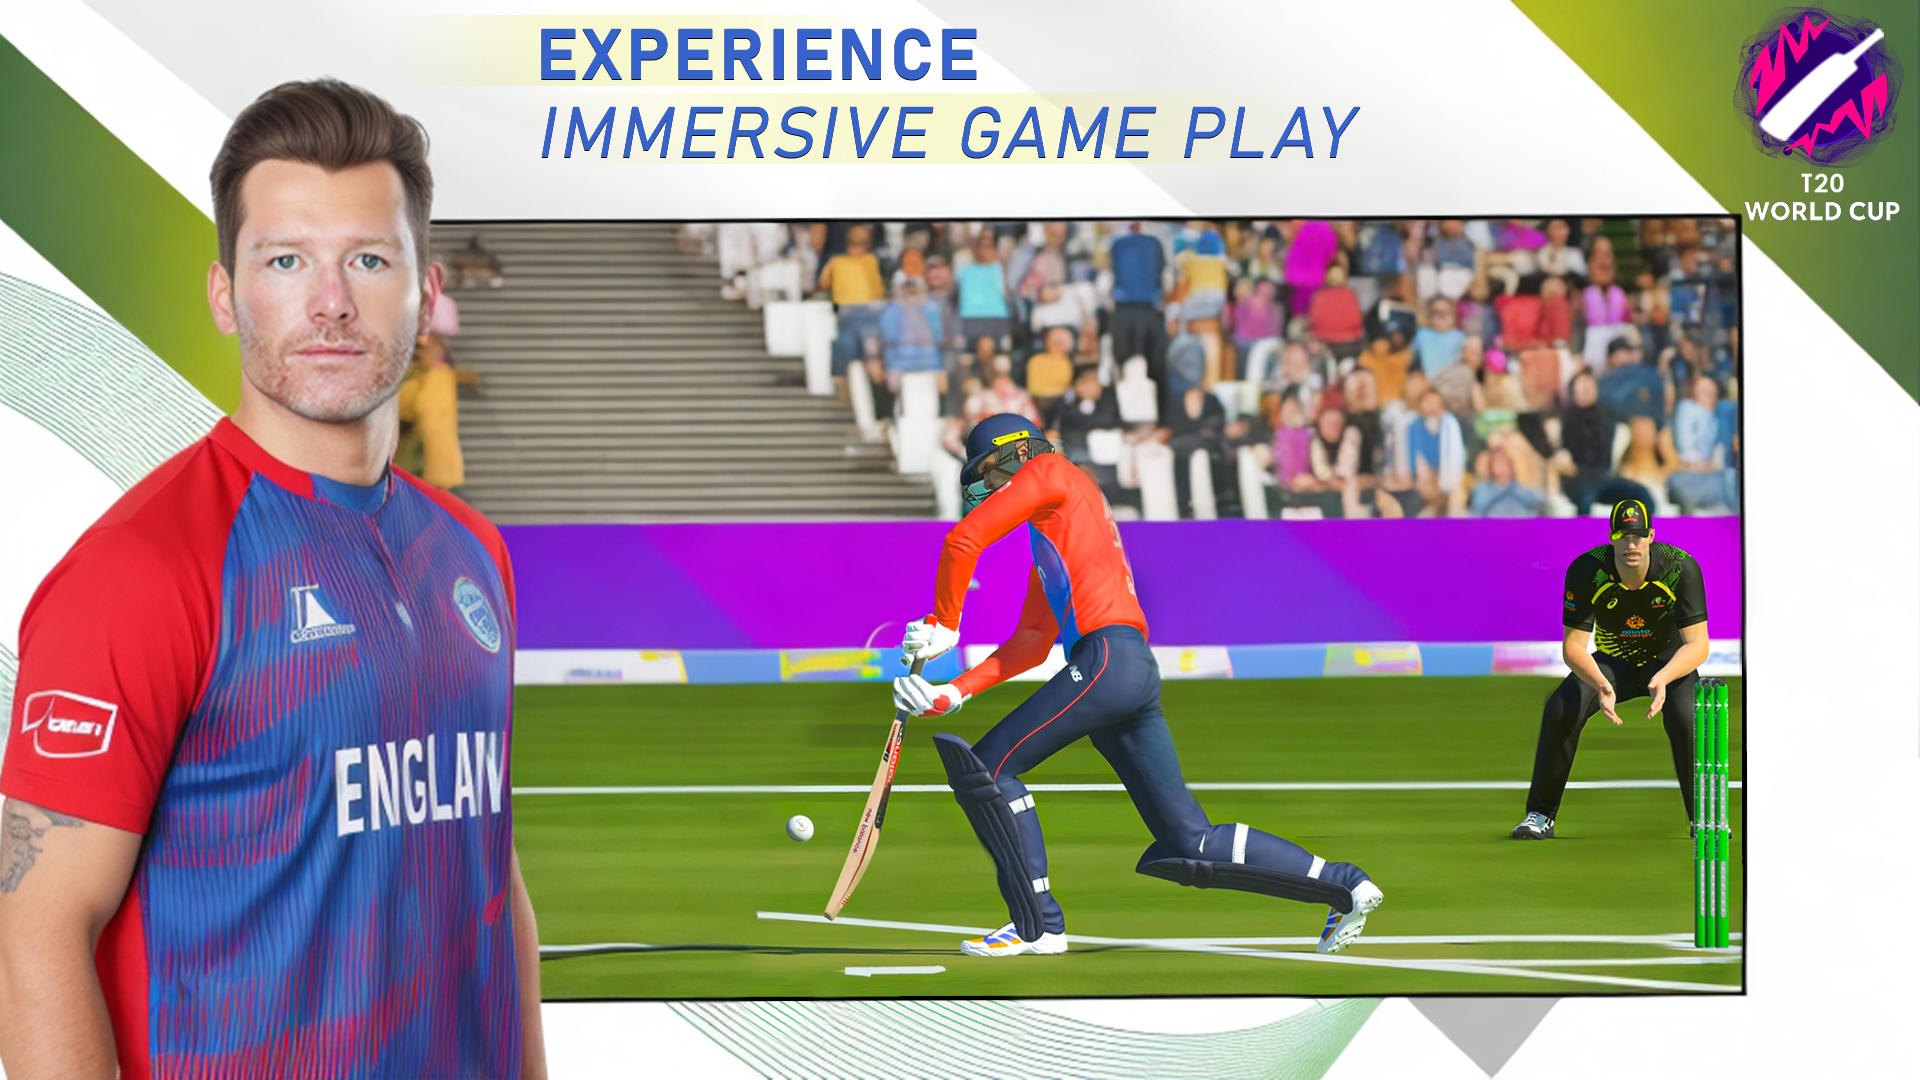 Screenshot of Cricket Game 3D: Bat Ball Game